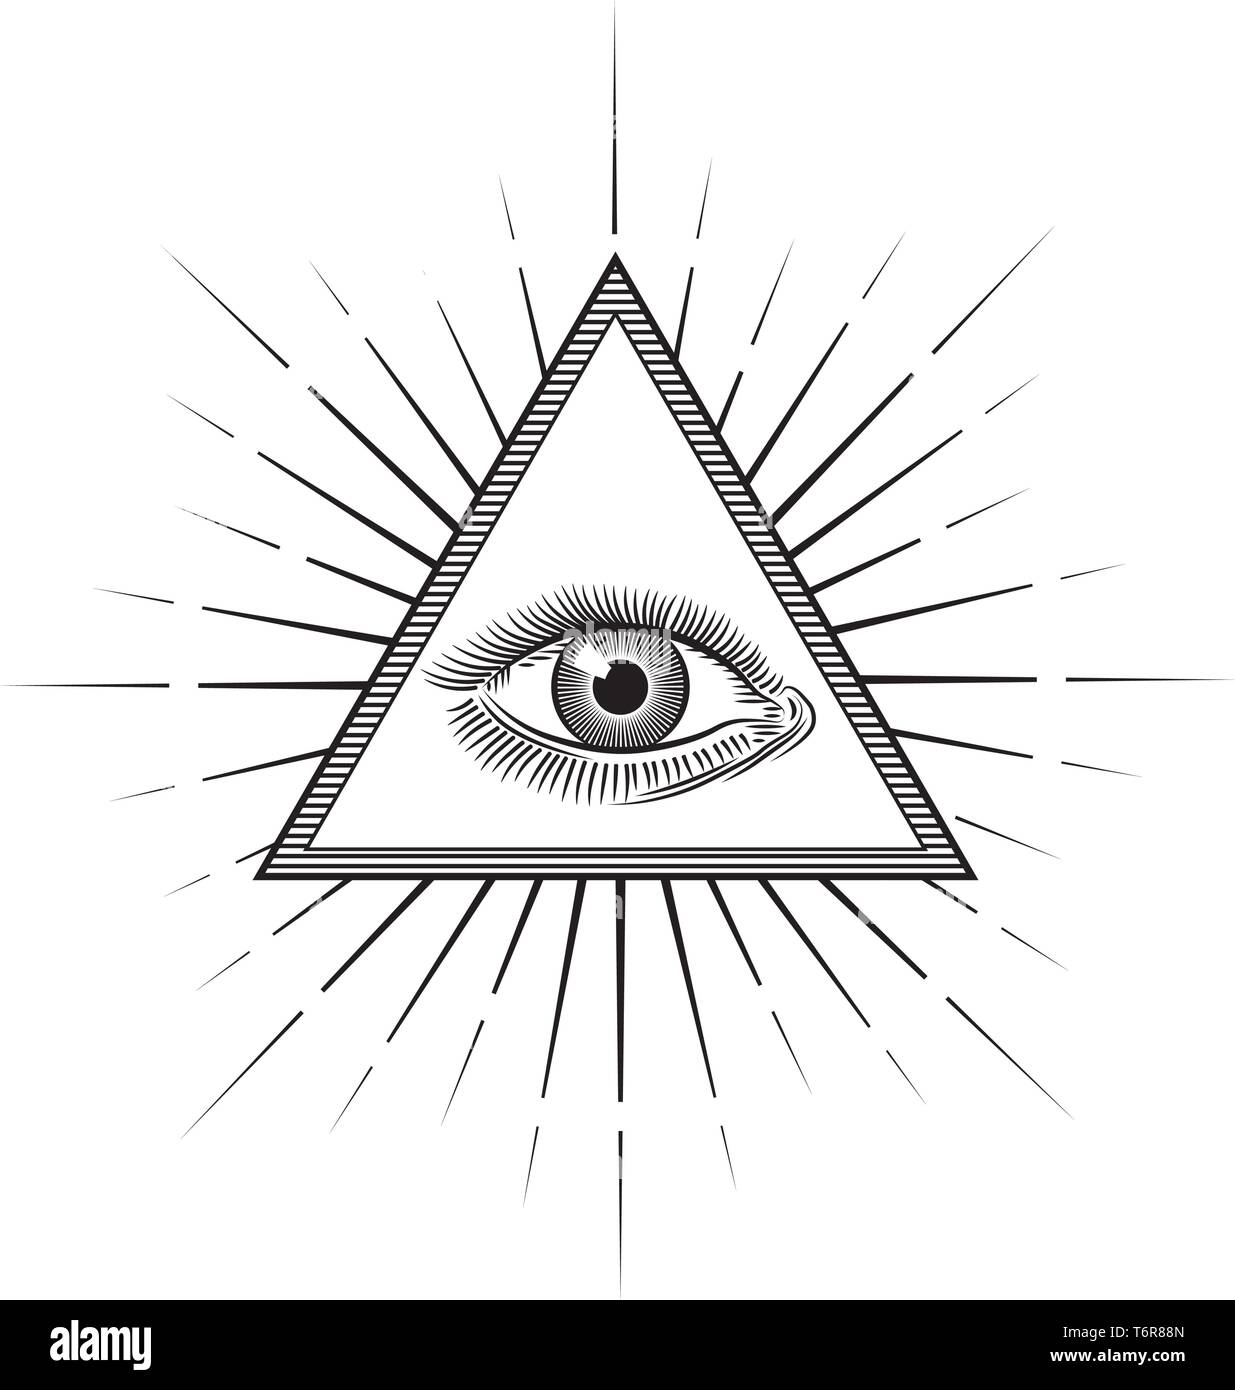 Vintage Gravur im Auge der Vorsehung oder All seeing Eye im inneren Dreieck Pyramide. Religion, Spiritualität und Okkultismus Symbol isoliert Vektor illus Stock Vektor